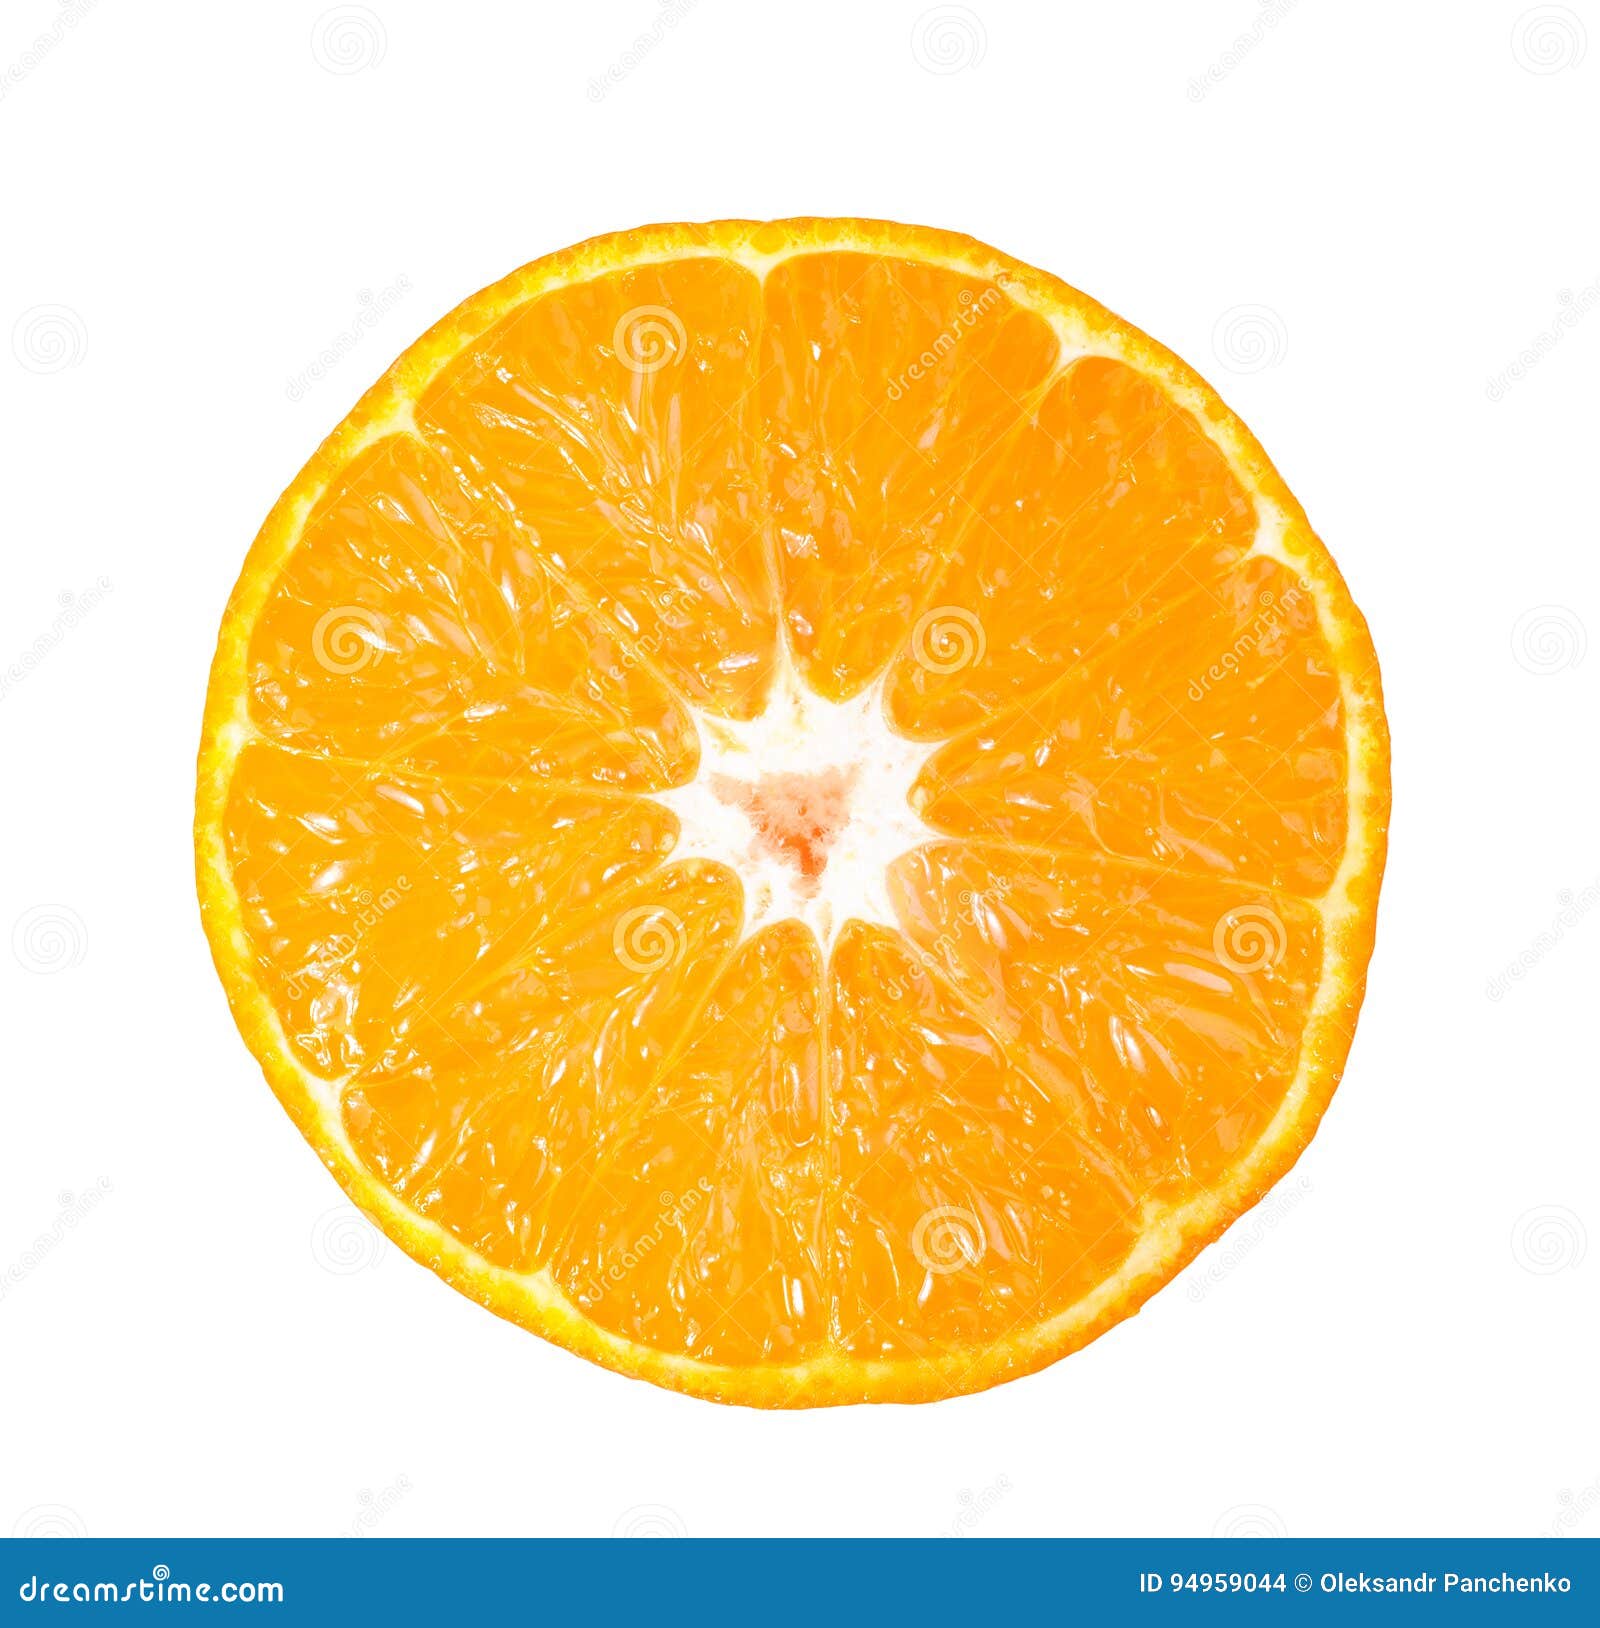 sliced fresh orange  on white